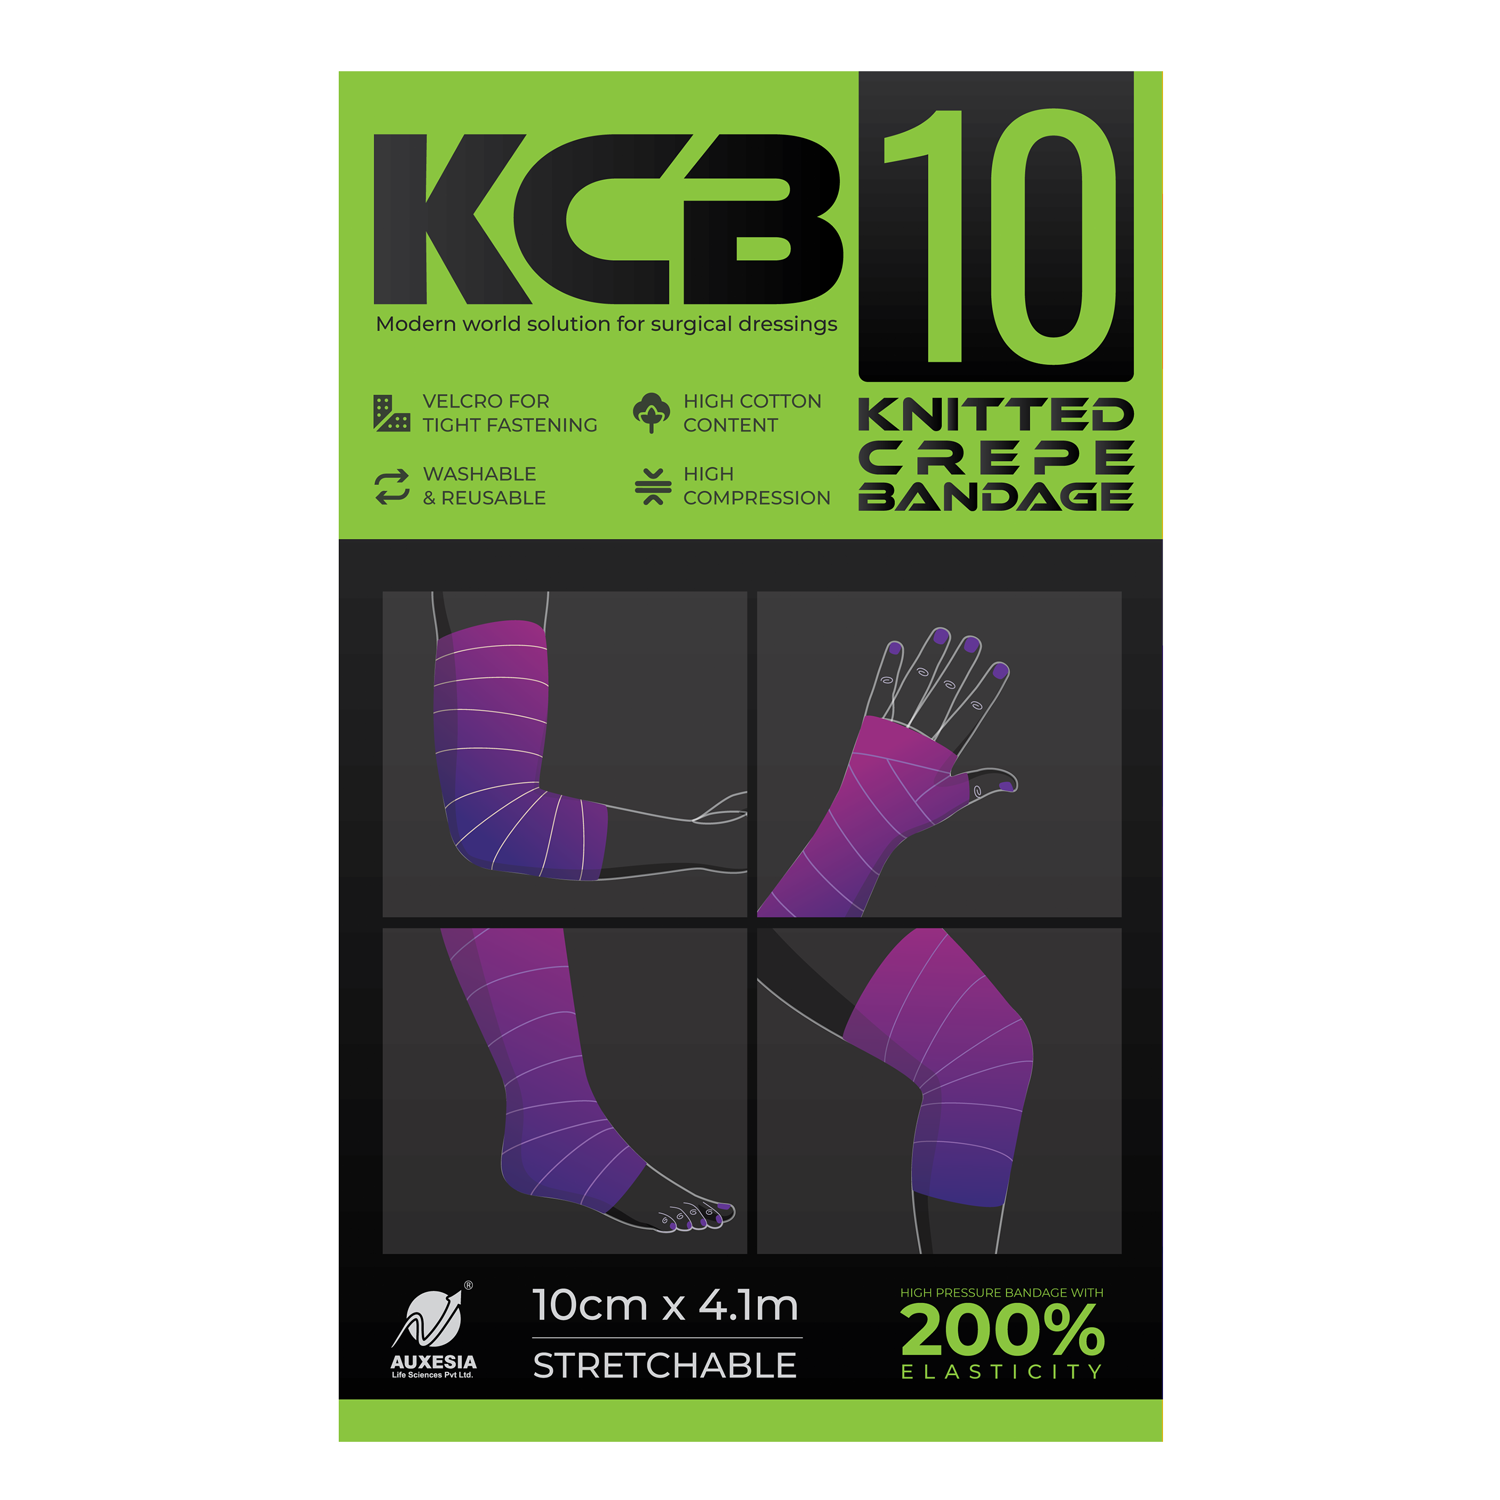 Knitted Crepe Bandage (KCB 10)